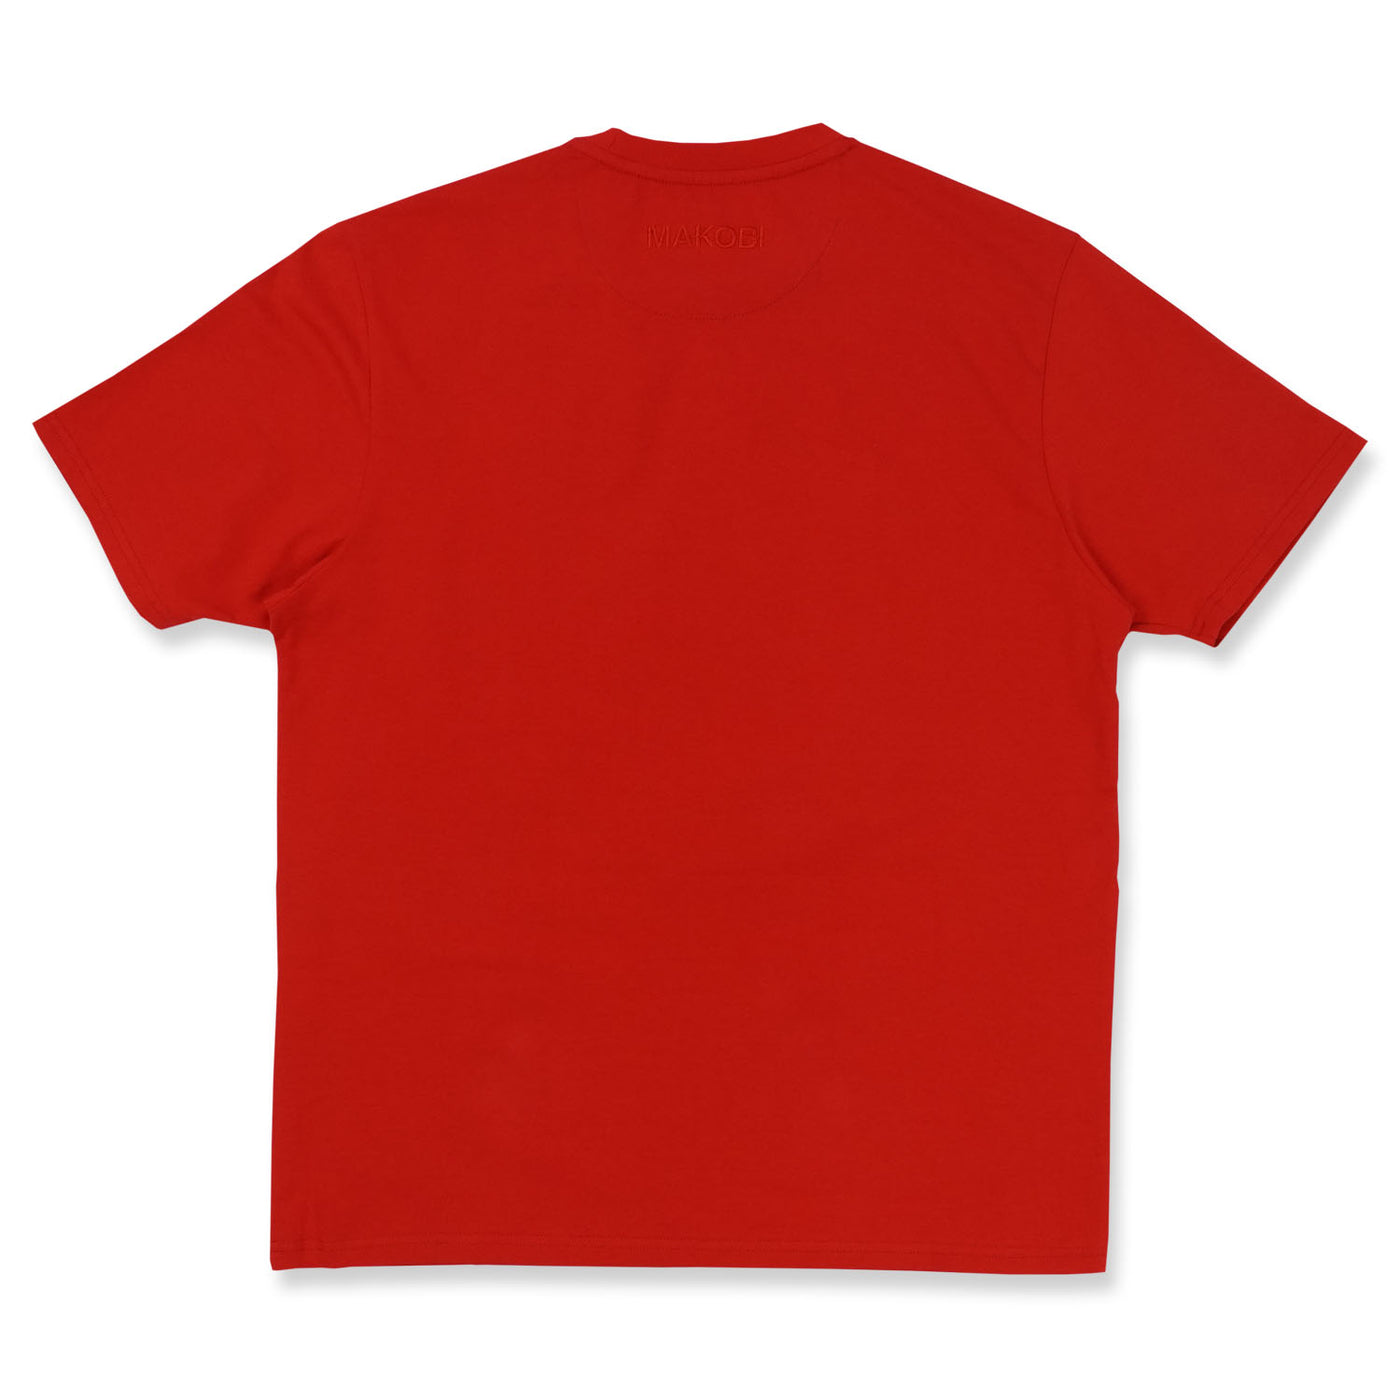 تی شرت گشاد M328 - قرمز